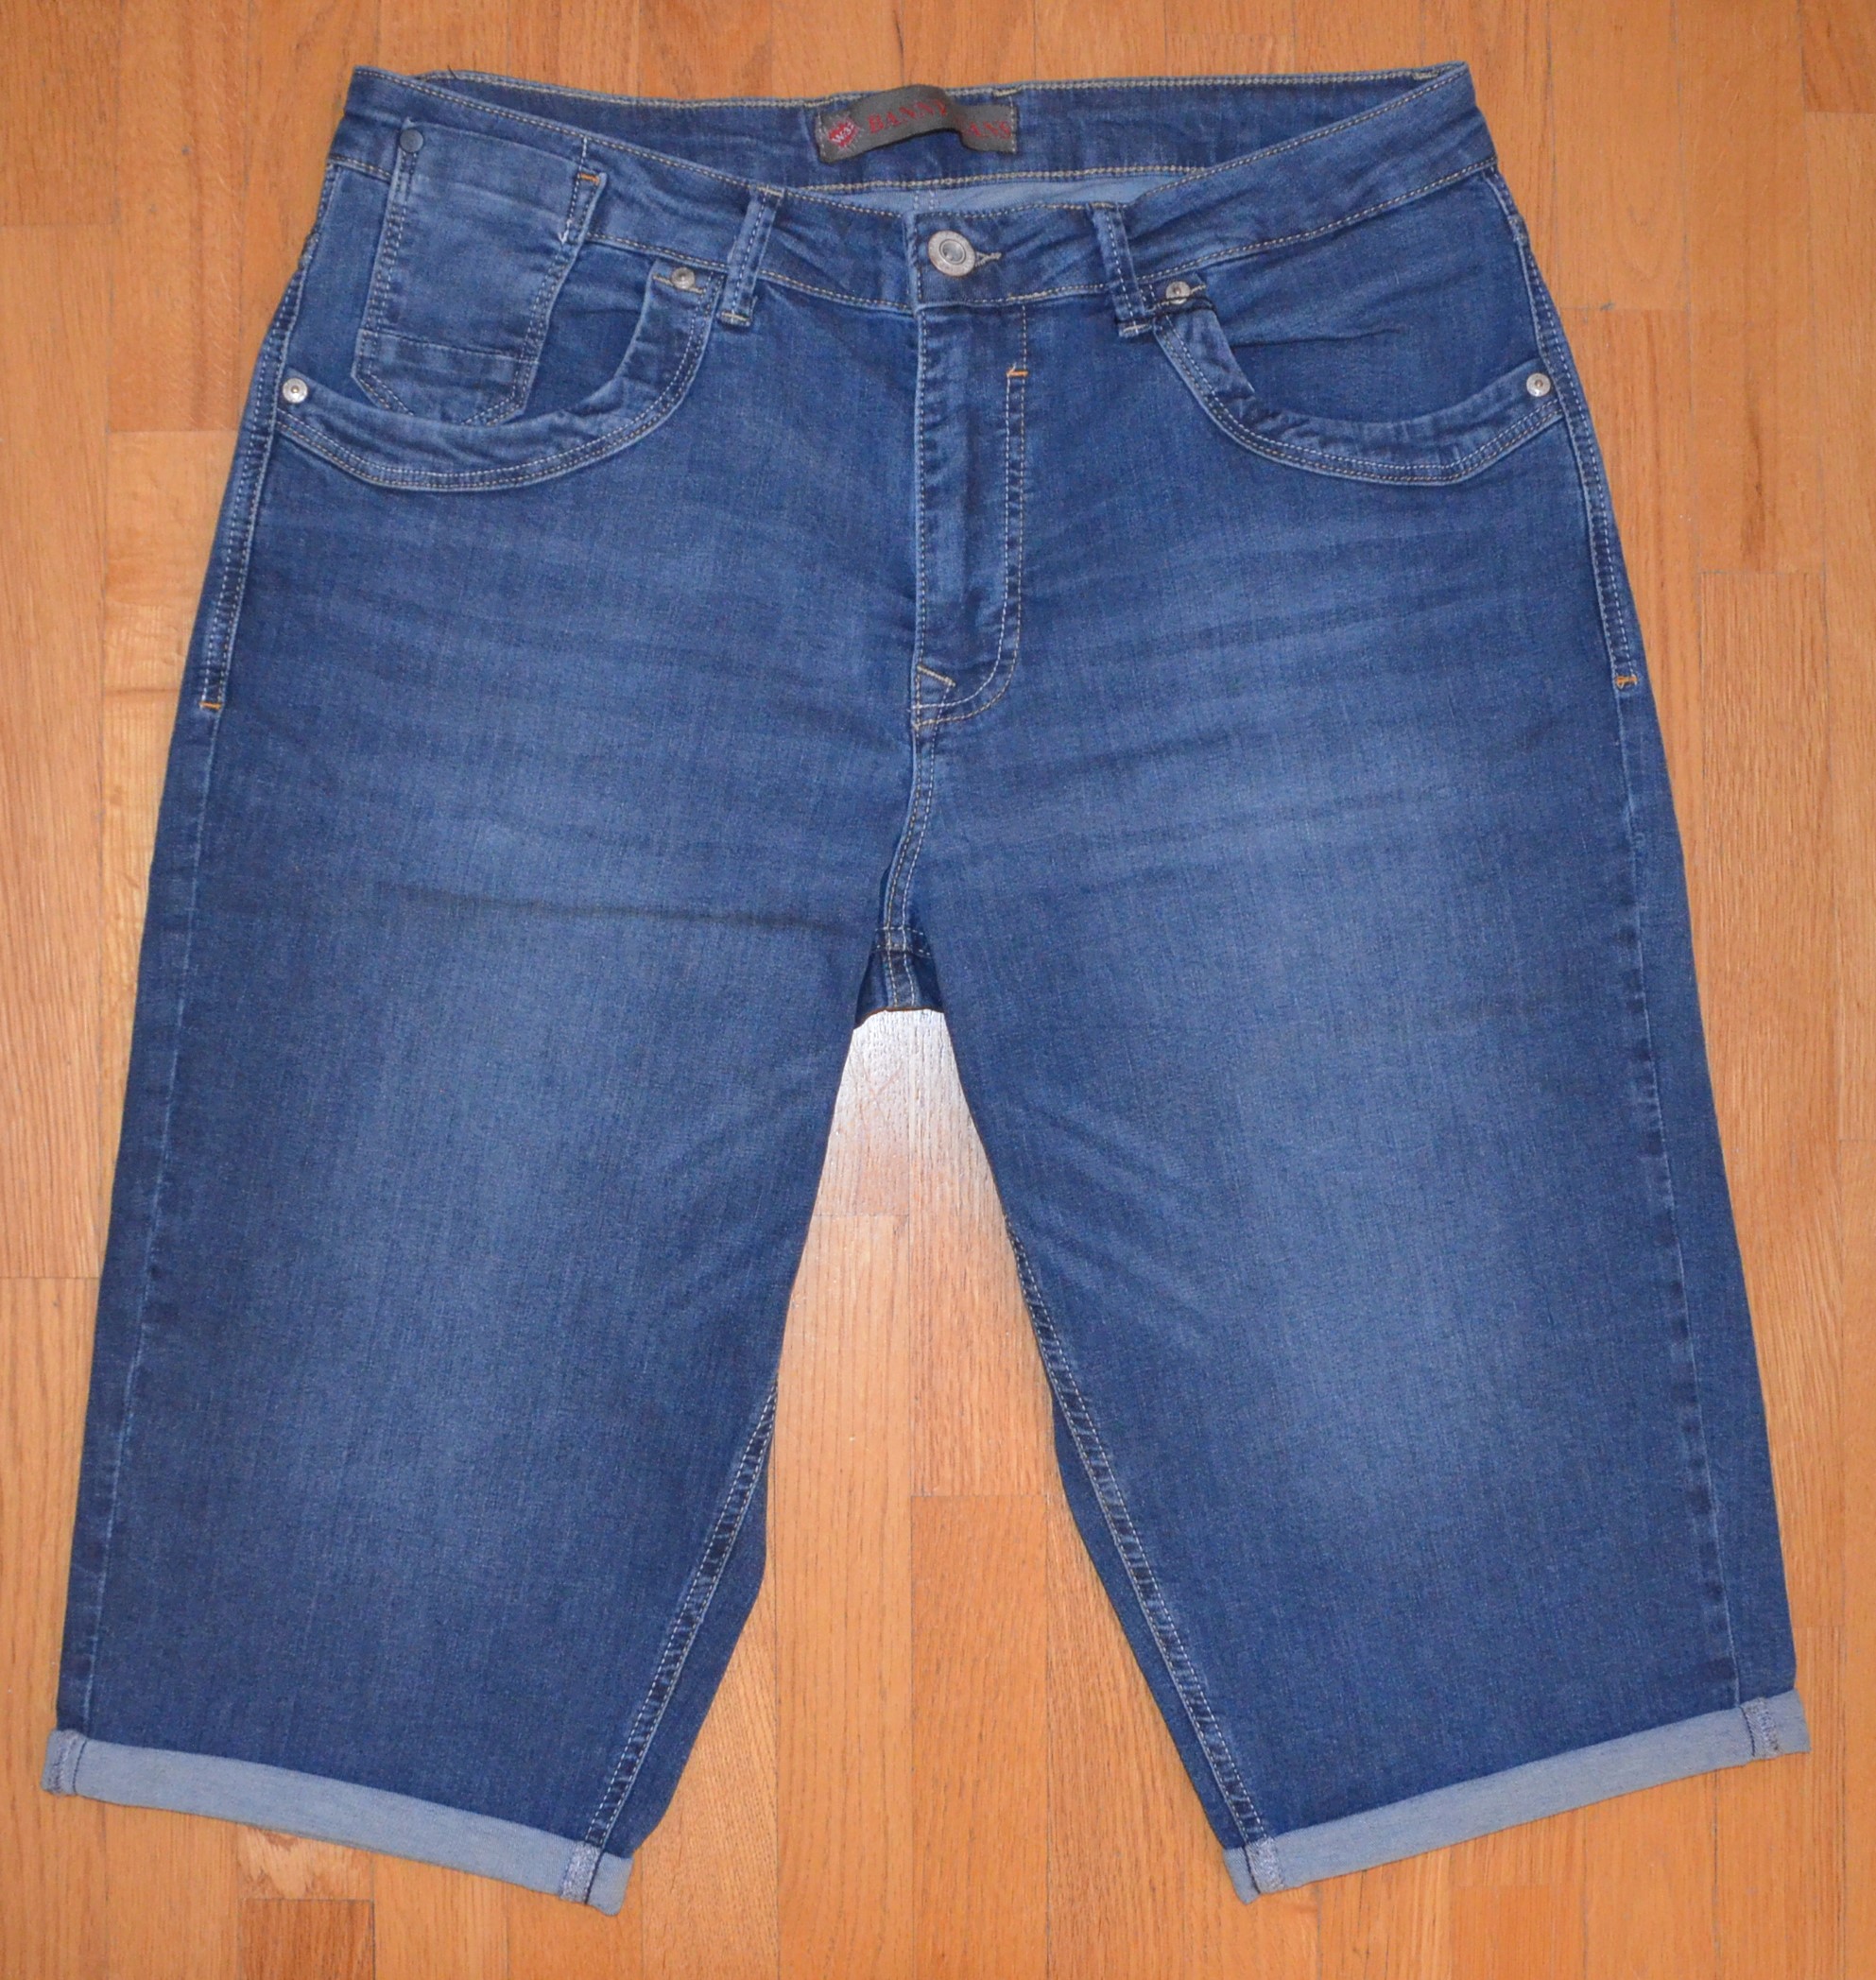 Pánské džínové šortky Banny Jeans P-2706 Velikost: 34